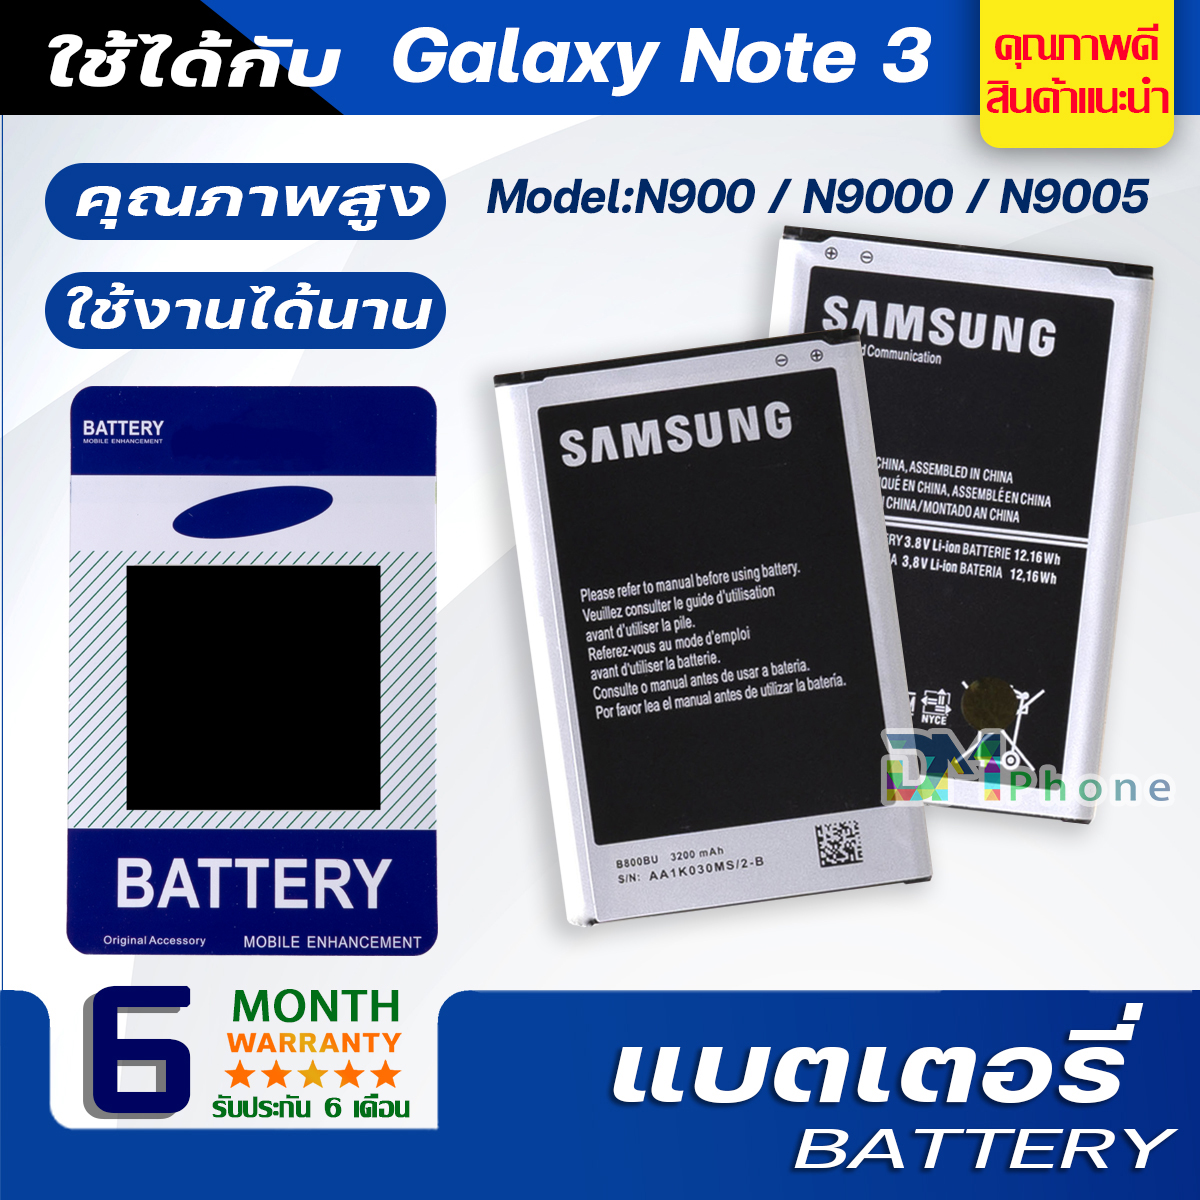 แบตเตอรี่ samsung galaxy Note 3 / N900 / N9000 / N9005 แบต Battery สำหรับ ซัมซุง กาแลคซี่ Note3 , N900 , N9000 , N9005 มีประกัน 6 เดือน